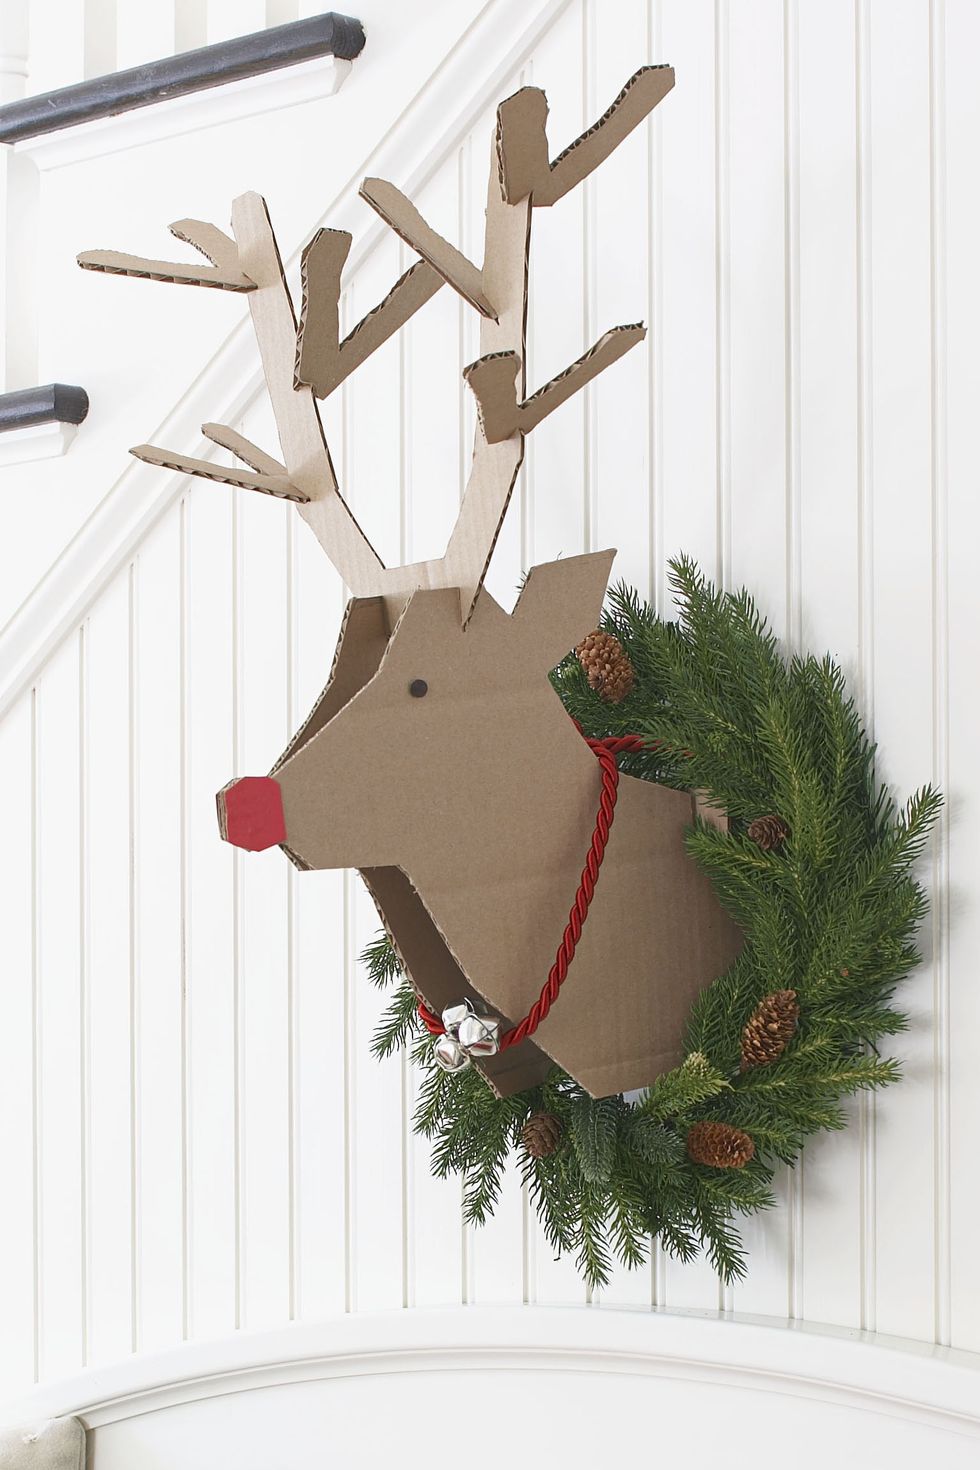 Reindeer wreath.jpg